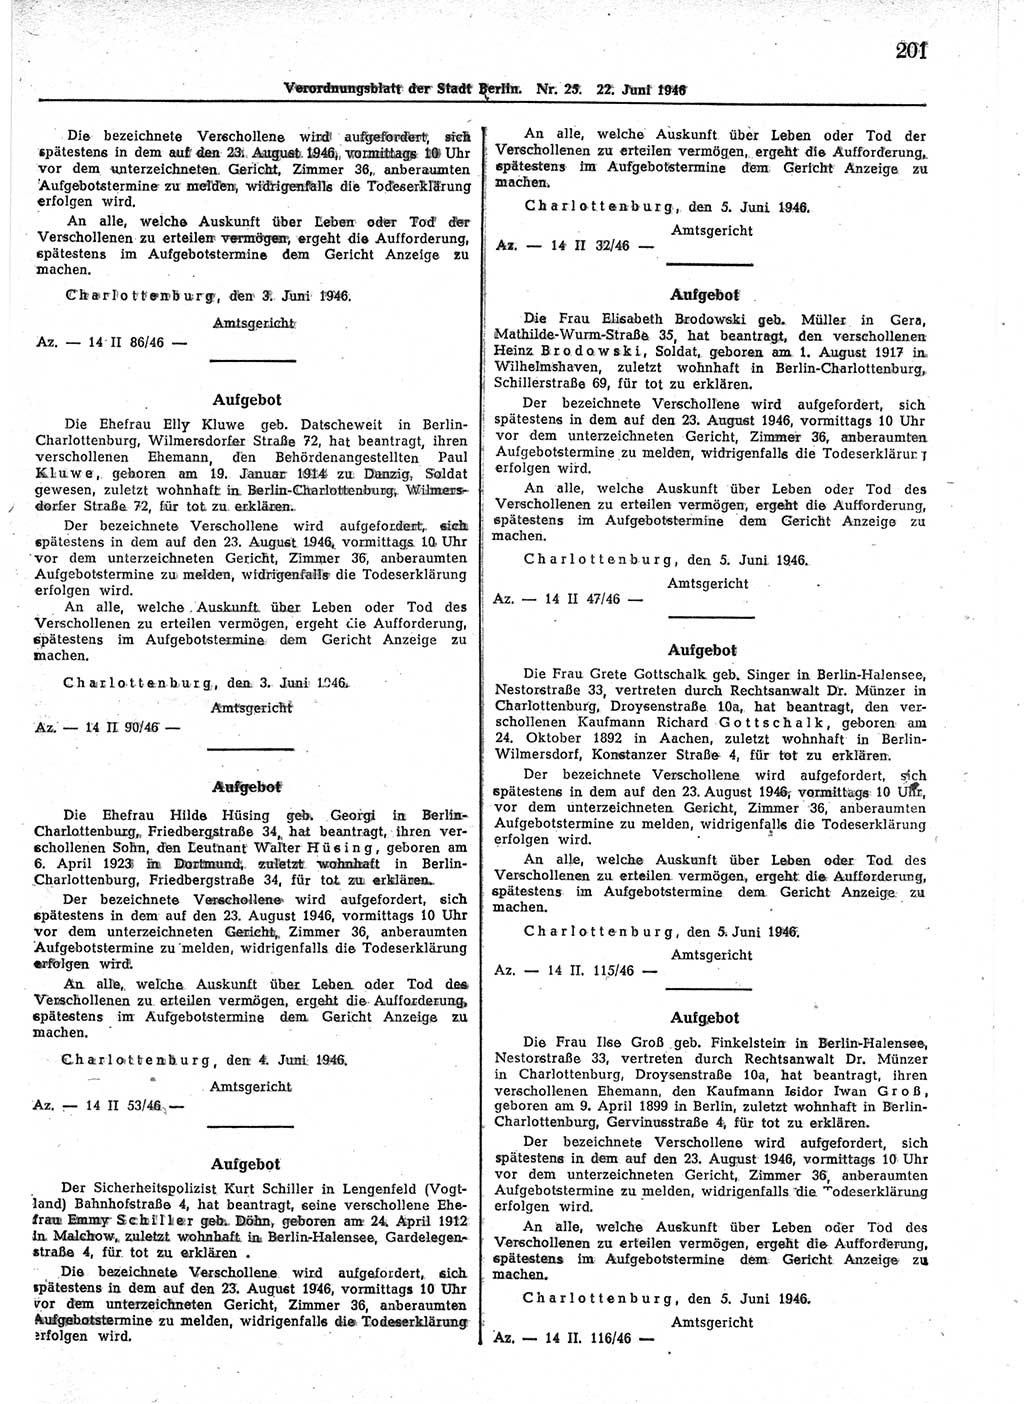 Verordnungsblatt (VOBl.) der Stadt Berlin, für Groß-Berlin 1946, Seite 201 (VOBl. Bln. 1946, S. 201)